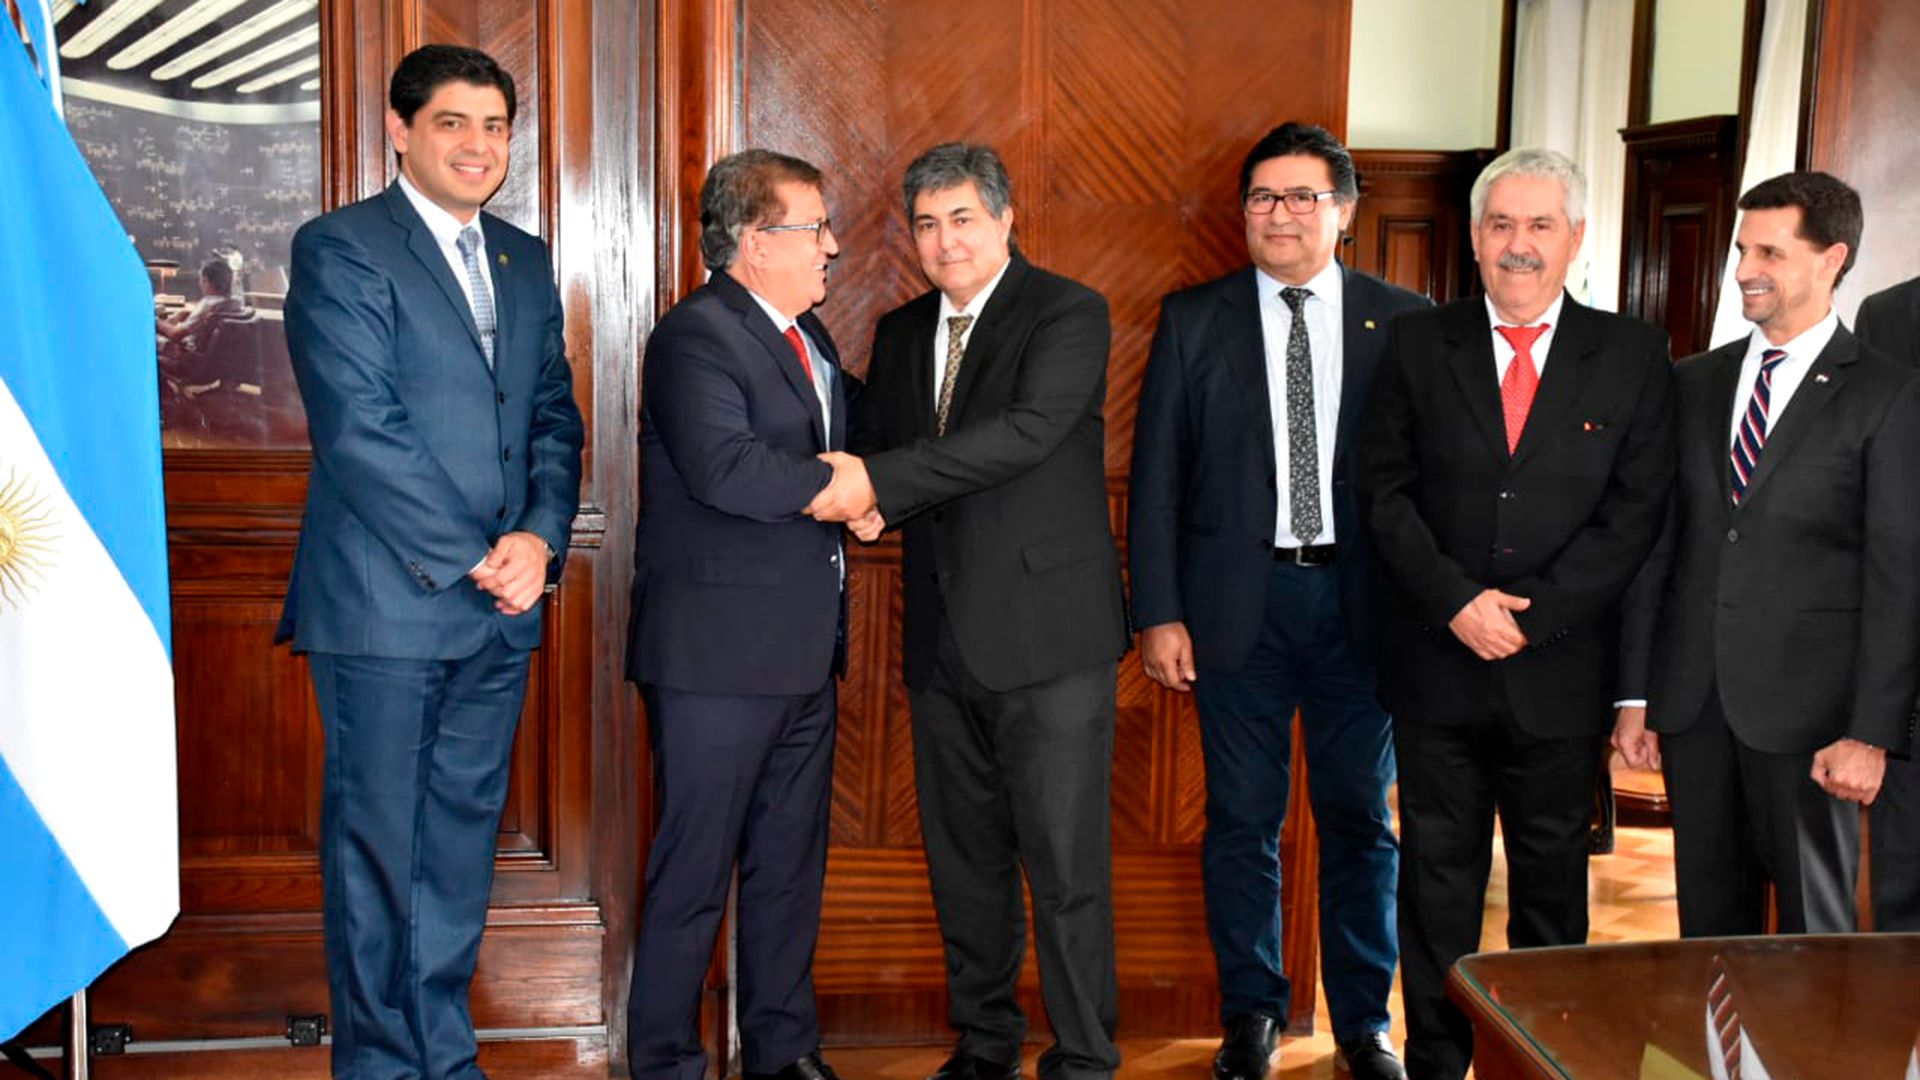 Ayer, el secretario de Energía con Nicanor Duarte Frutos, ex presidente de Paraguay y Director Ejecutivo de la Entidad Binacional Yacyretá